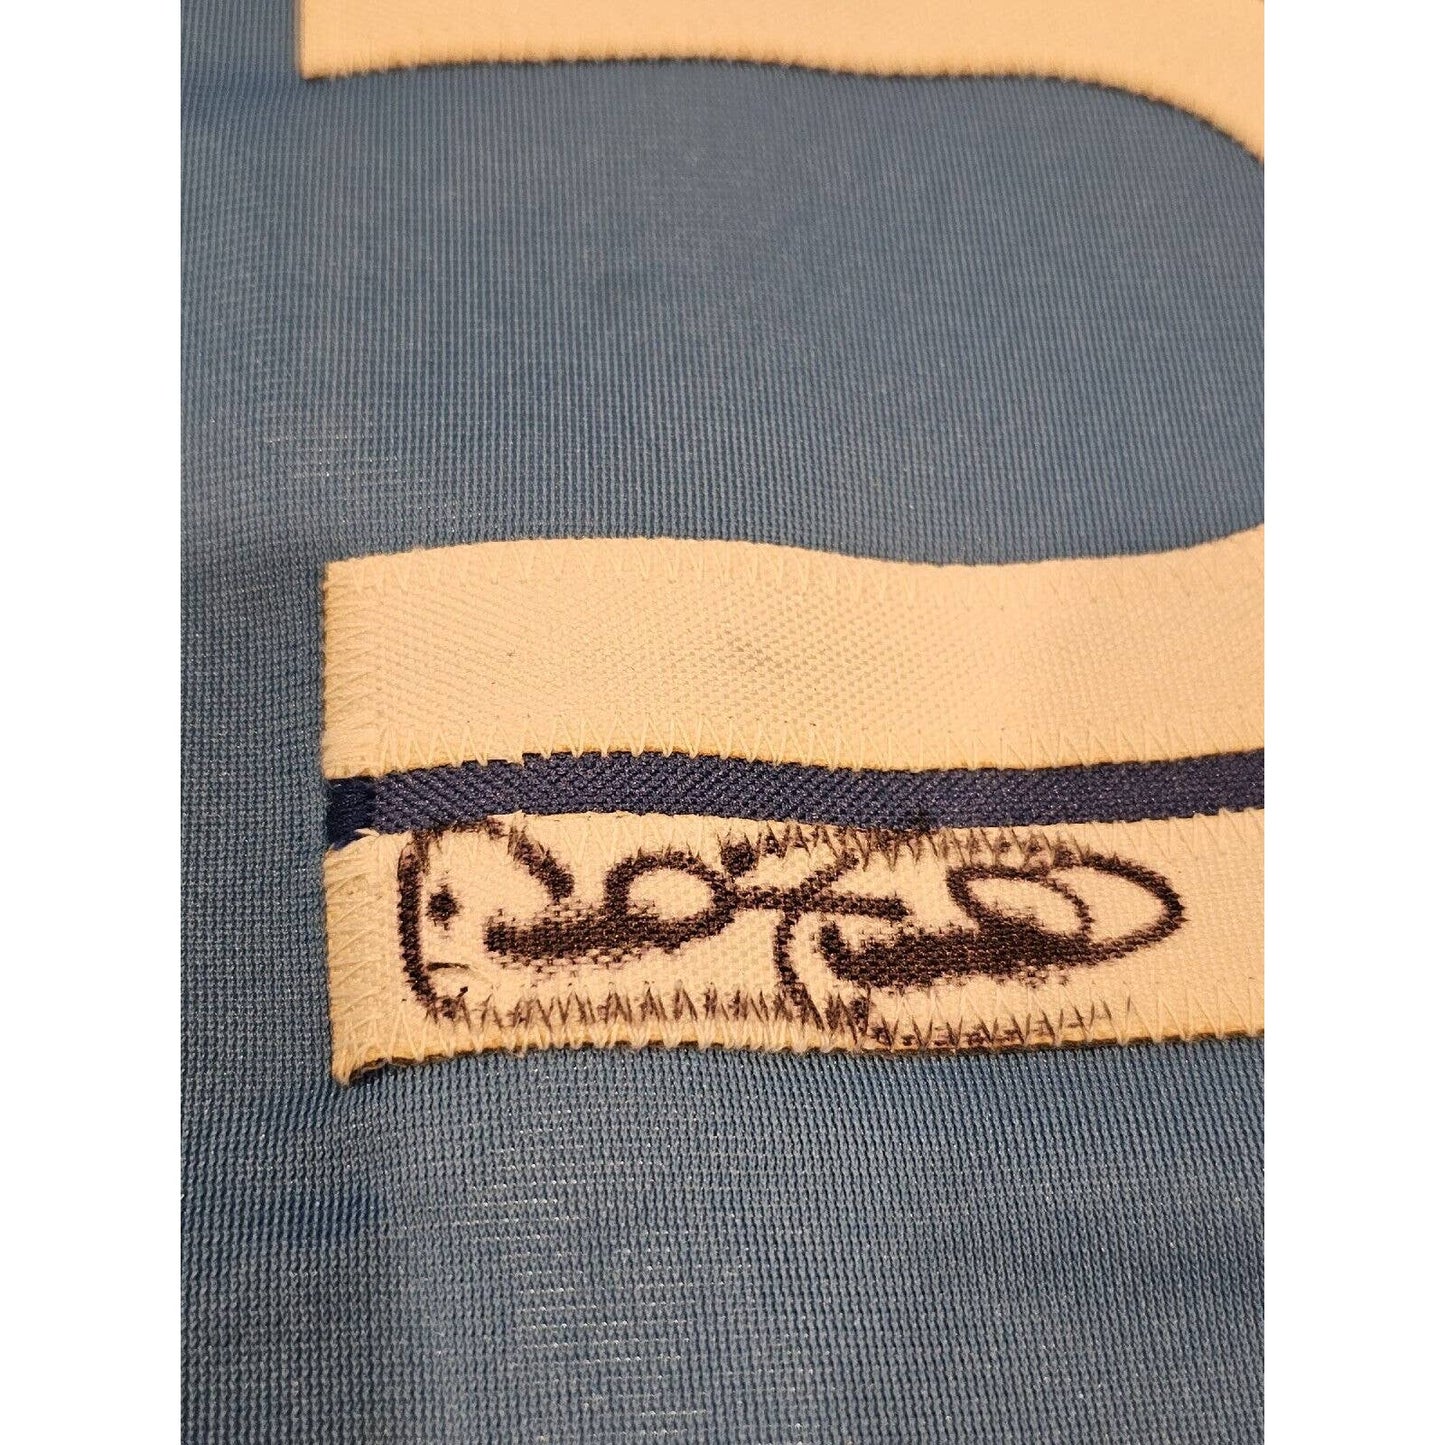 Cecil Fielder Autographed/Signed Jersey JSA Sticker Toronto Blue Jays